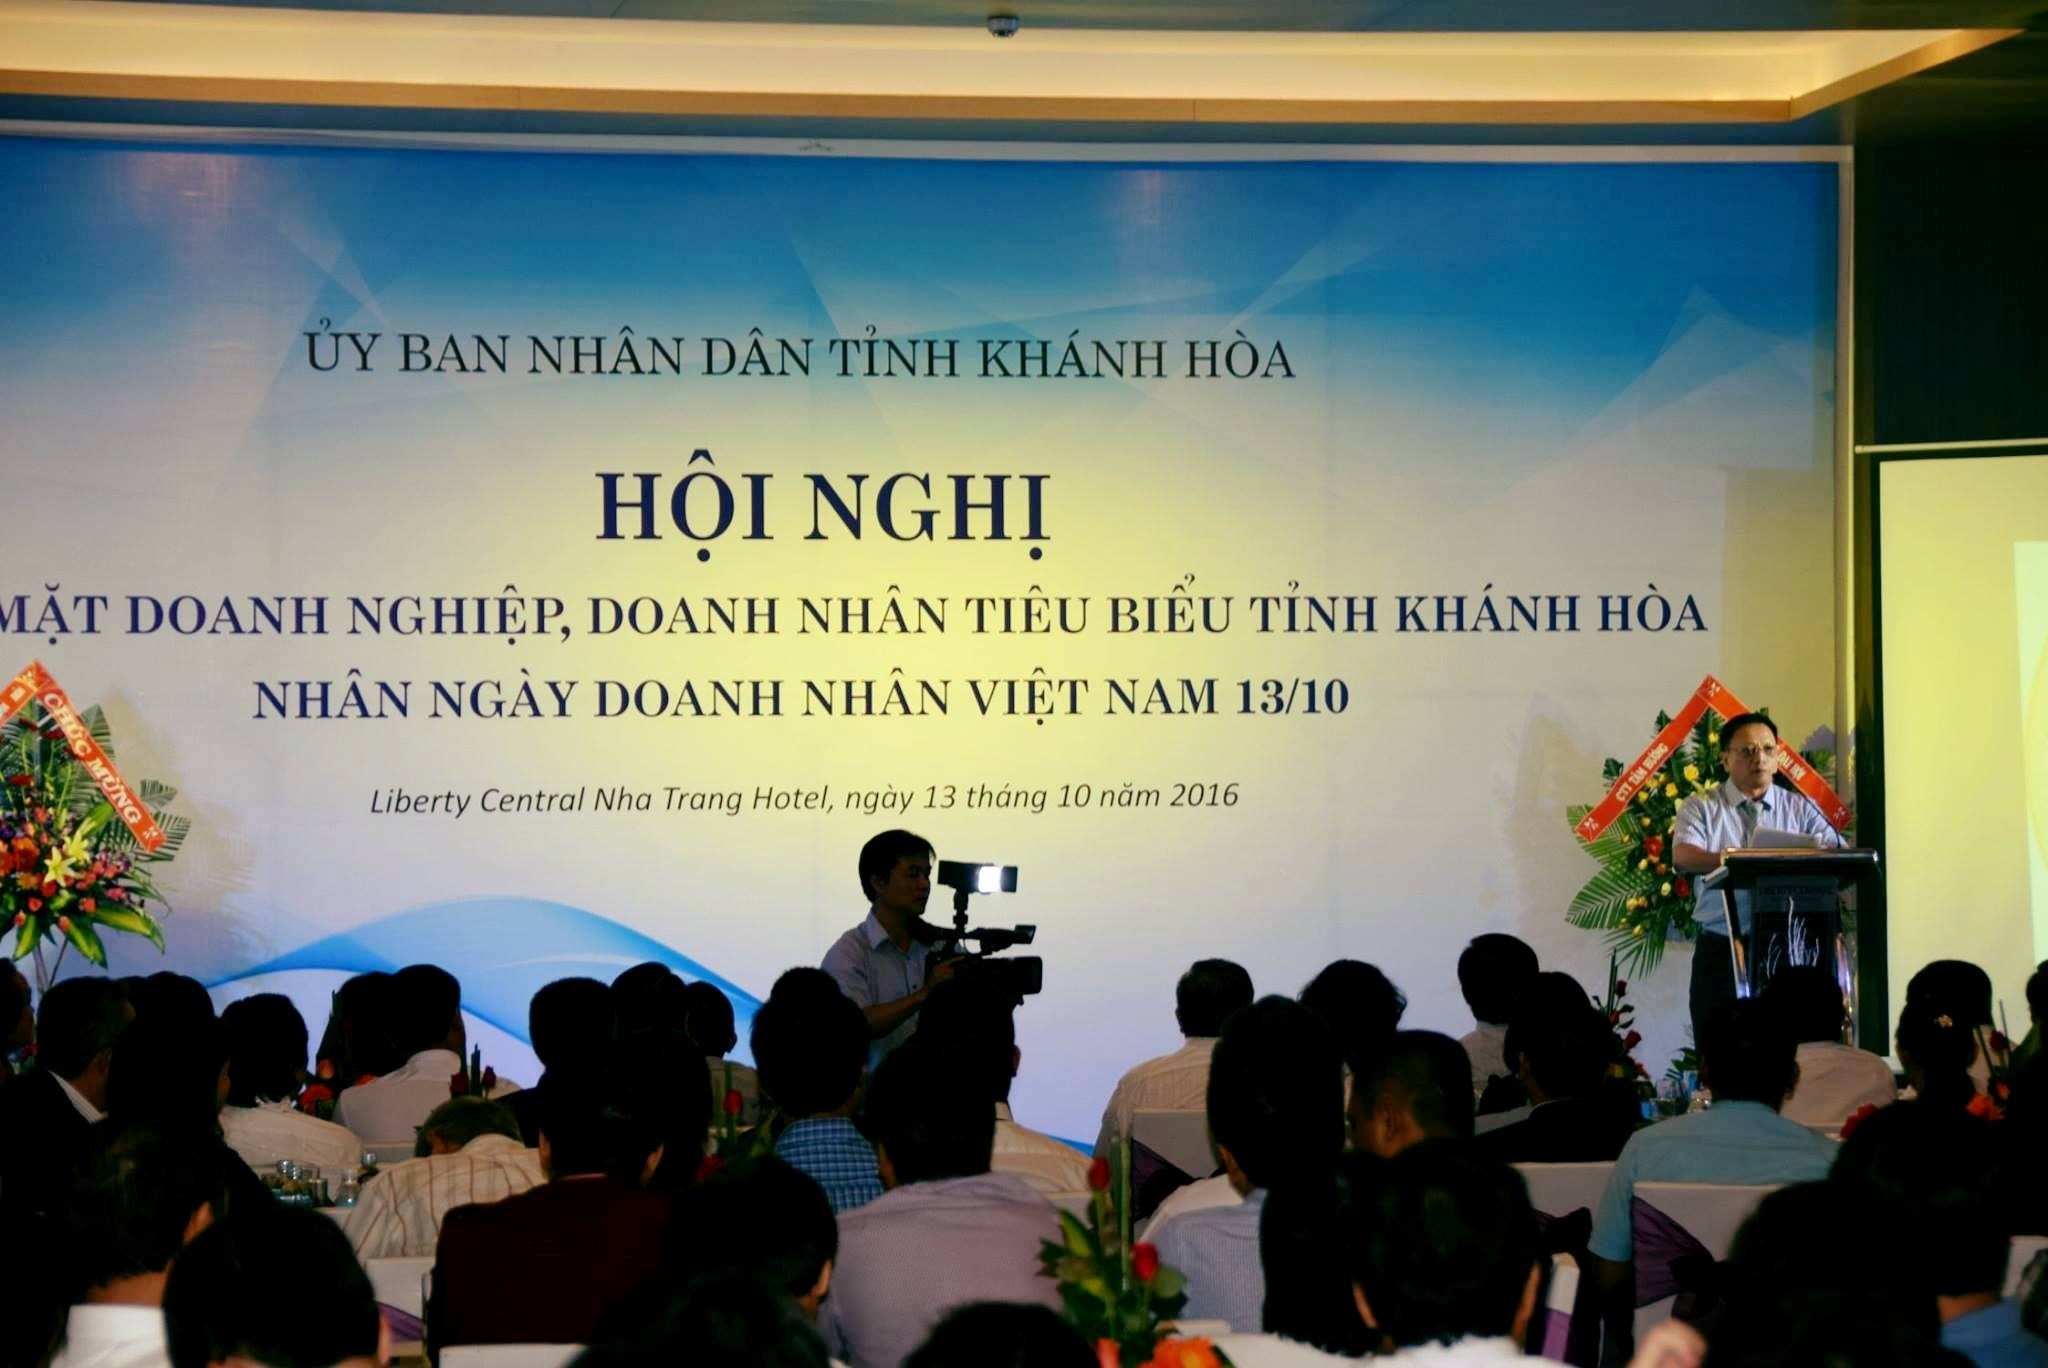 Vinh dự nhận giải thưởng Doanh Nghiệp và Doanh nhân tiêu biểu tỉnh Khánh Hòa năm 2016